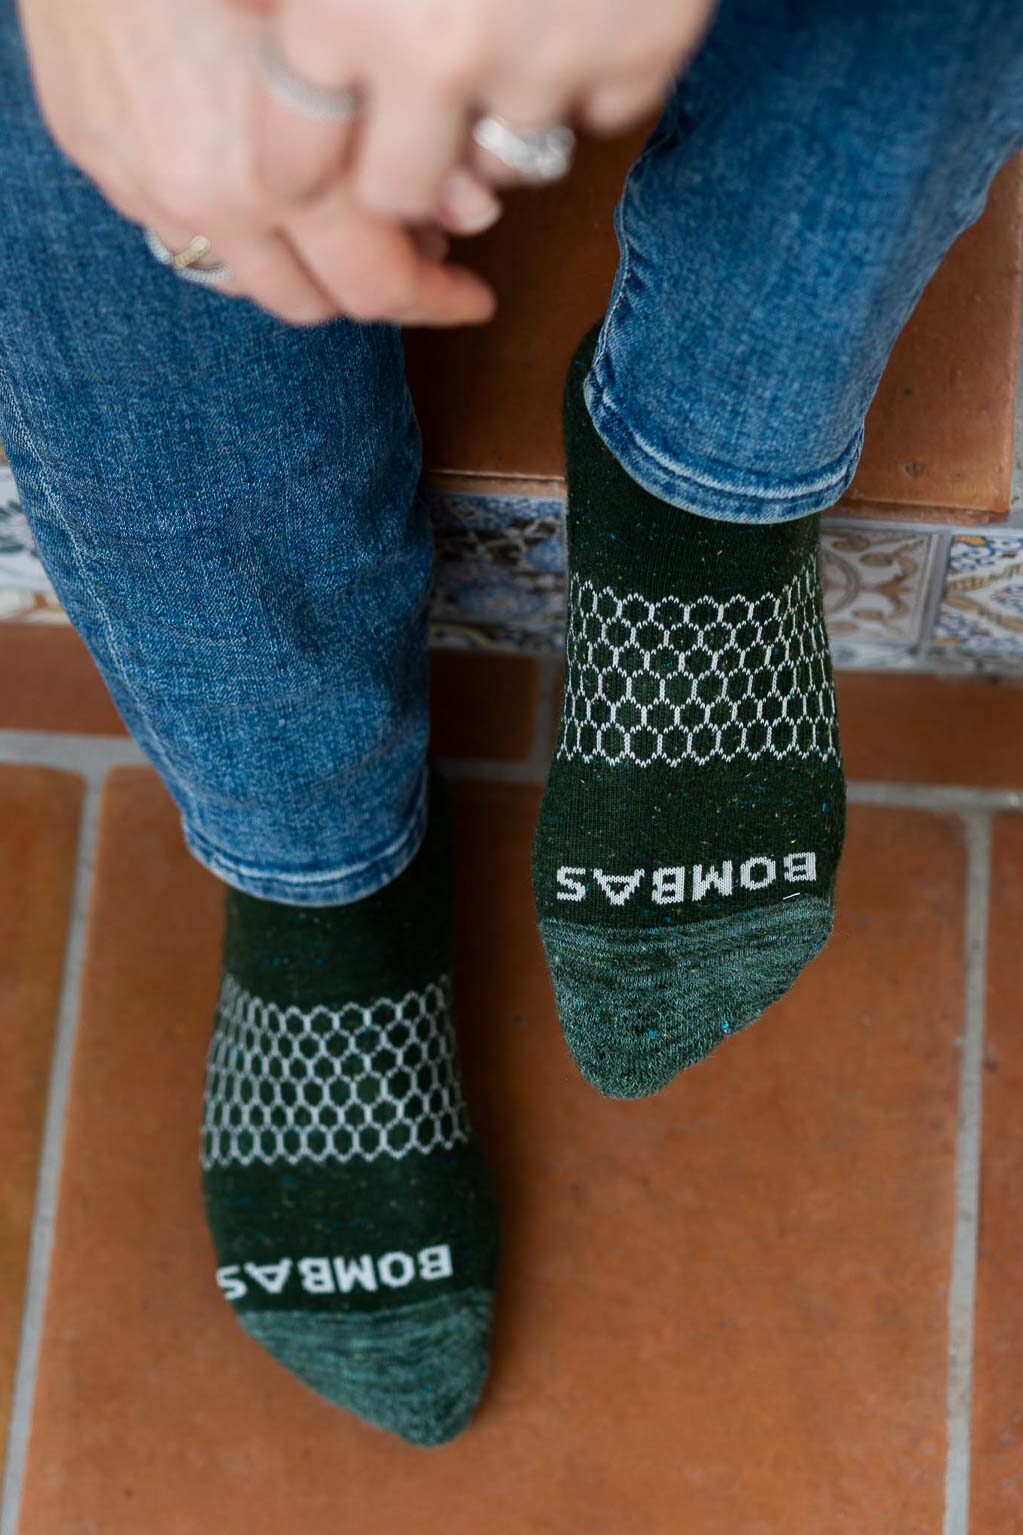 Sustainable Socks - Bombas socks - feet in green Bombas socks on Tile steps